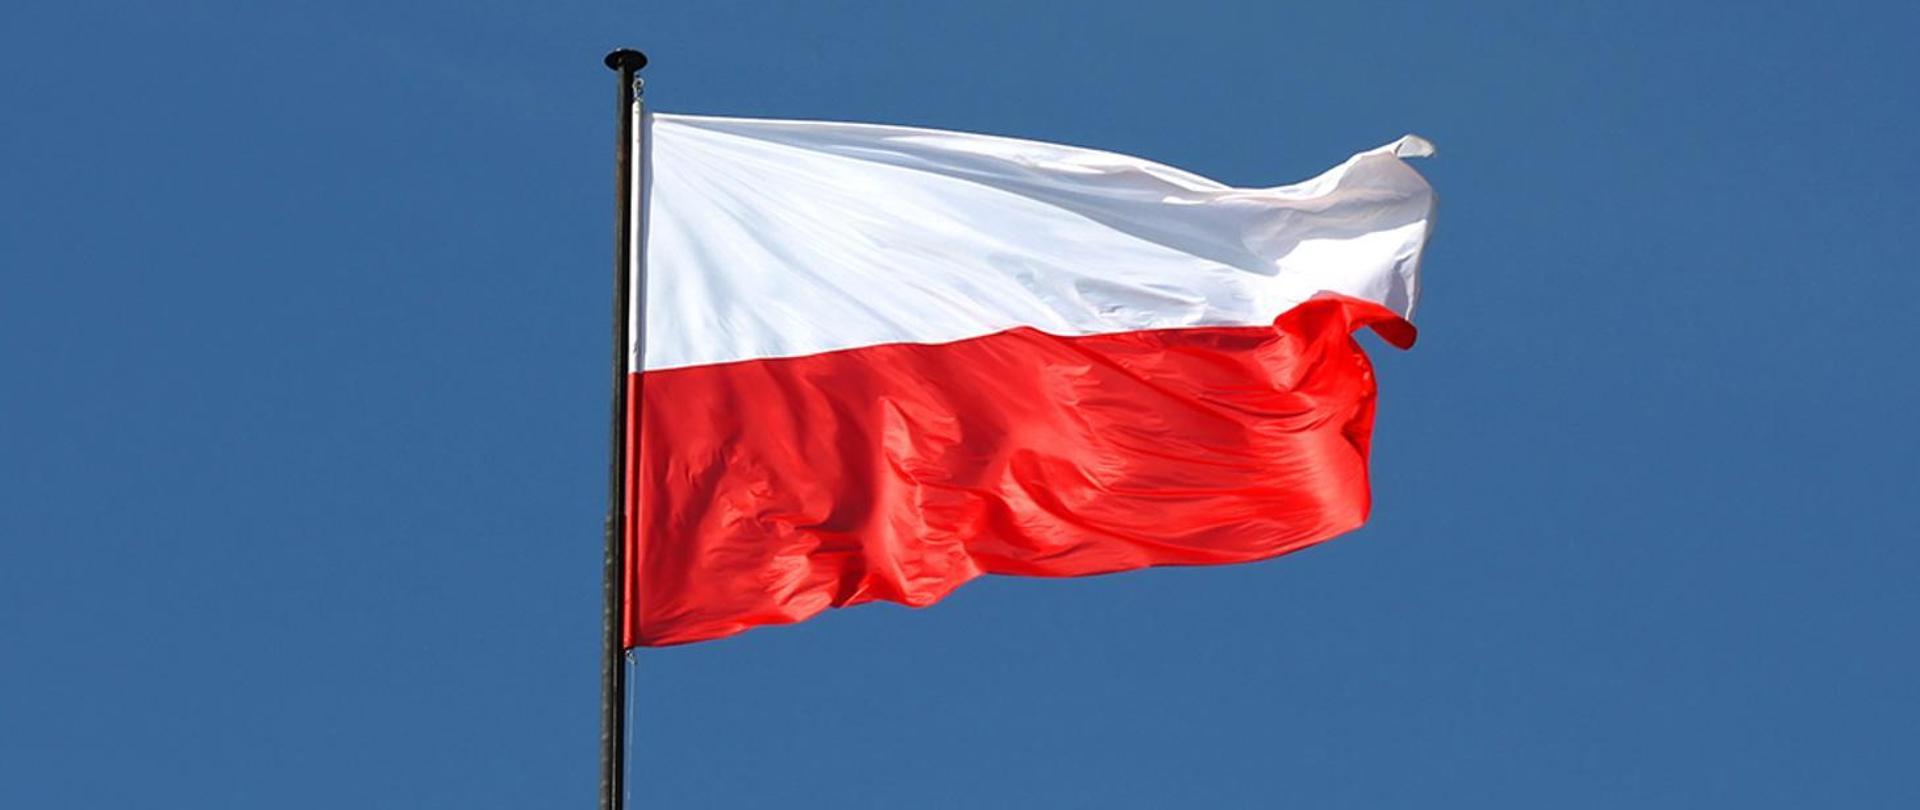 Flaga Polski powiewająca na niebieskim tle nieba